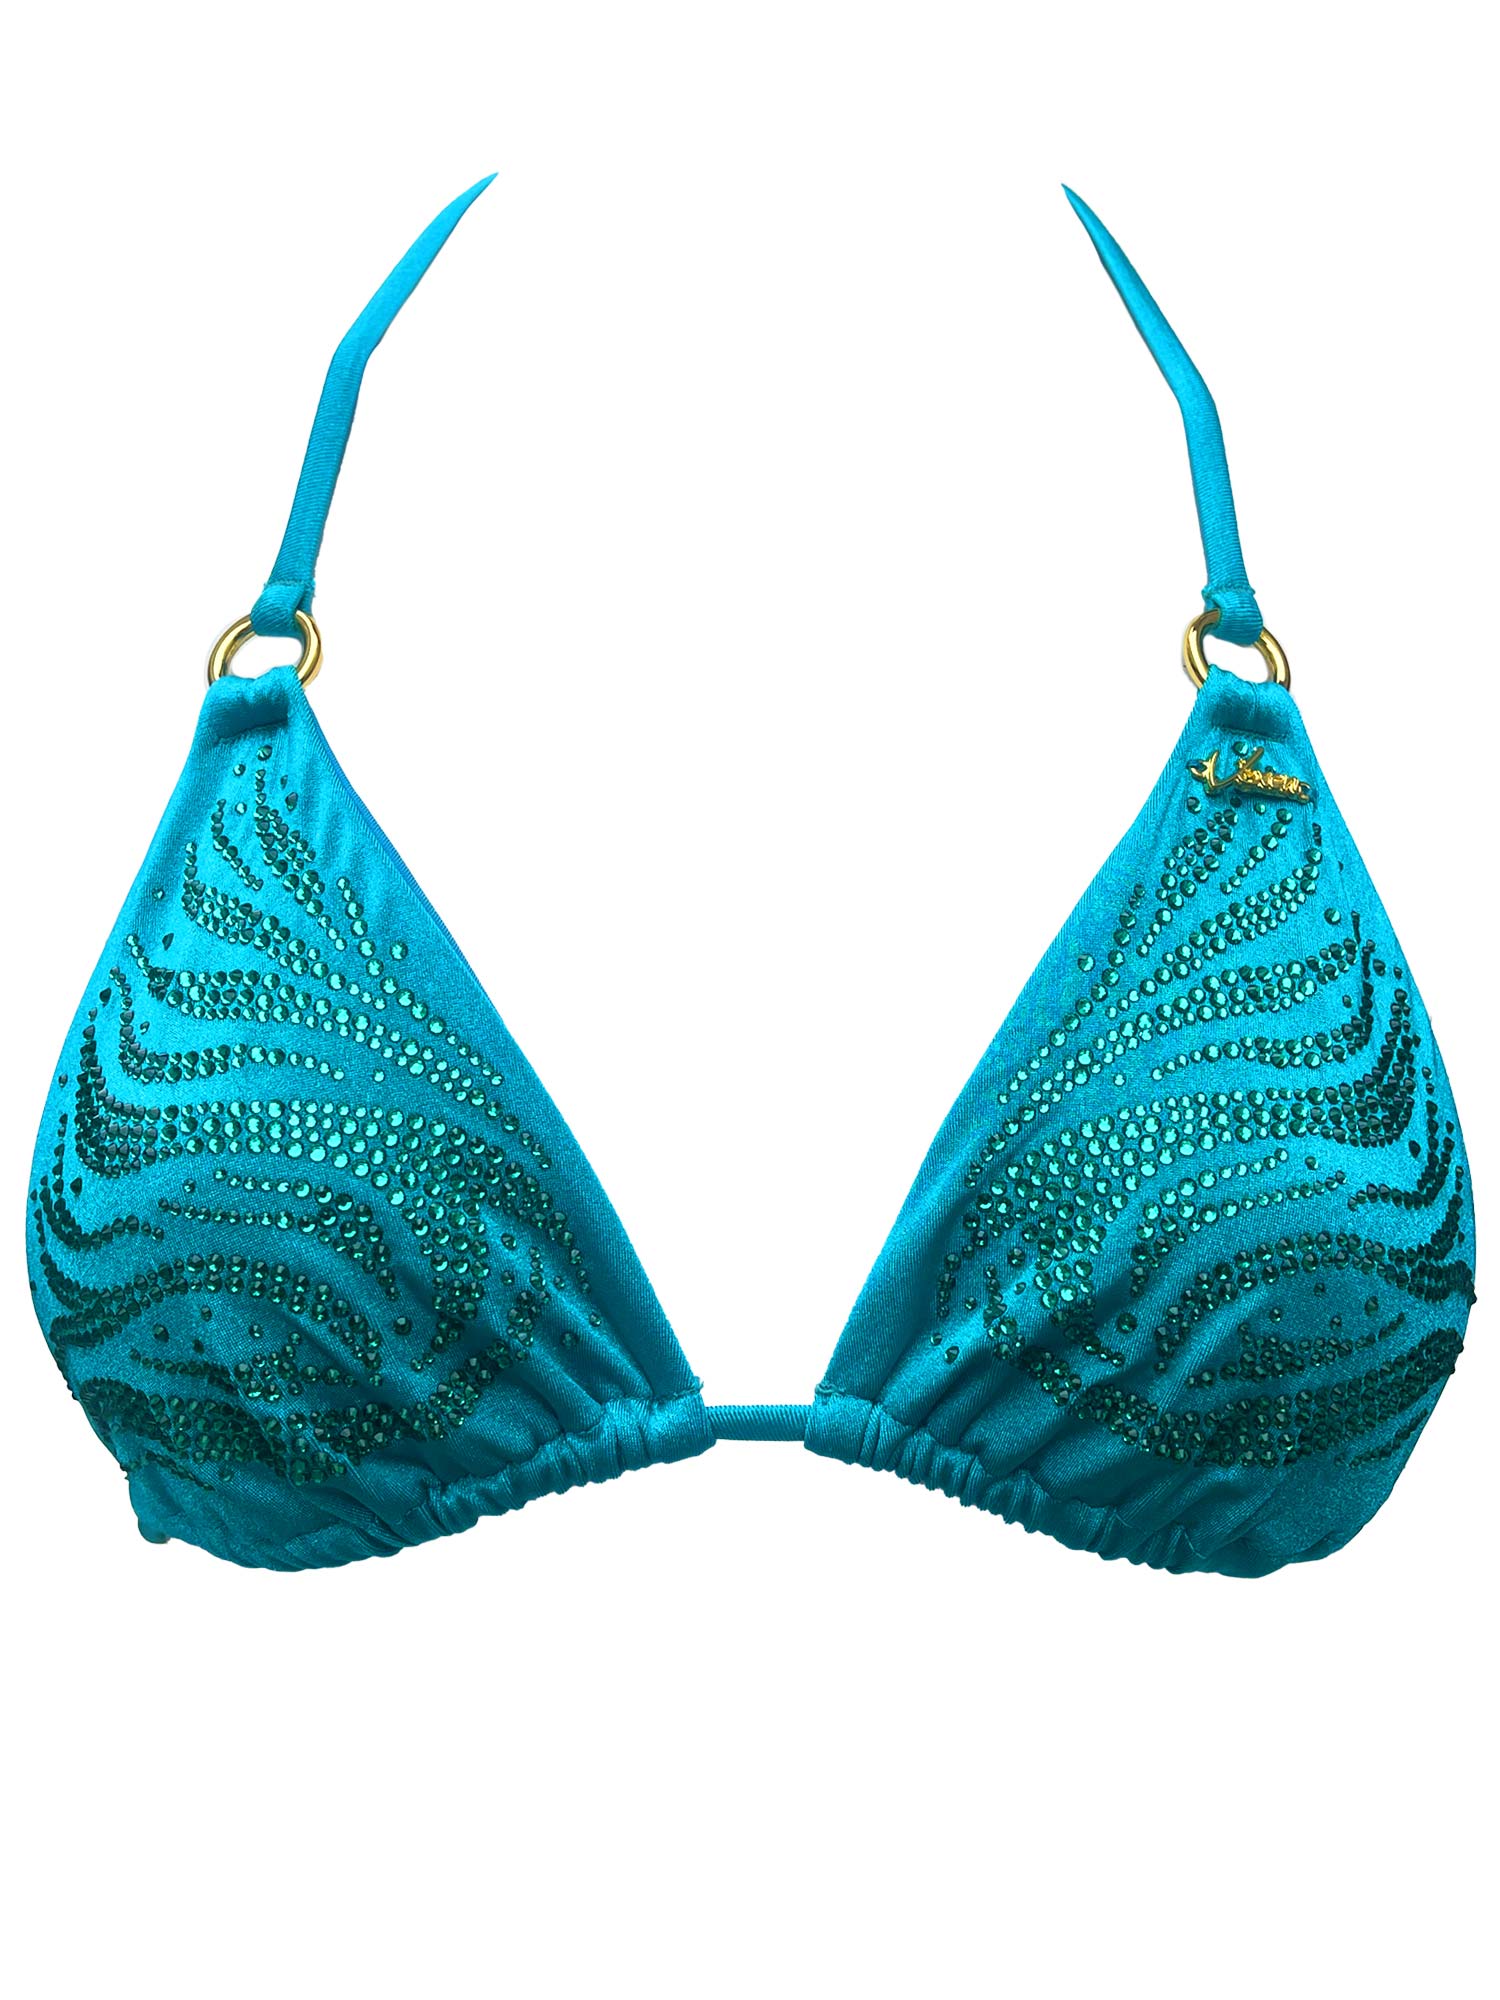 Turquoise bikini top